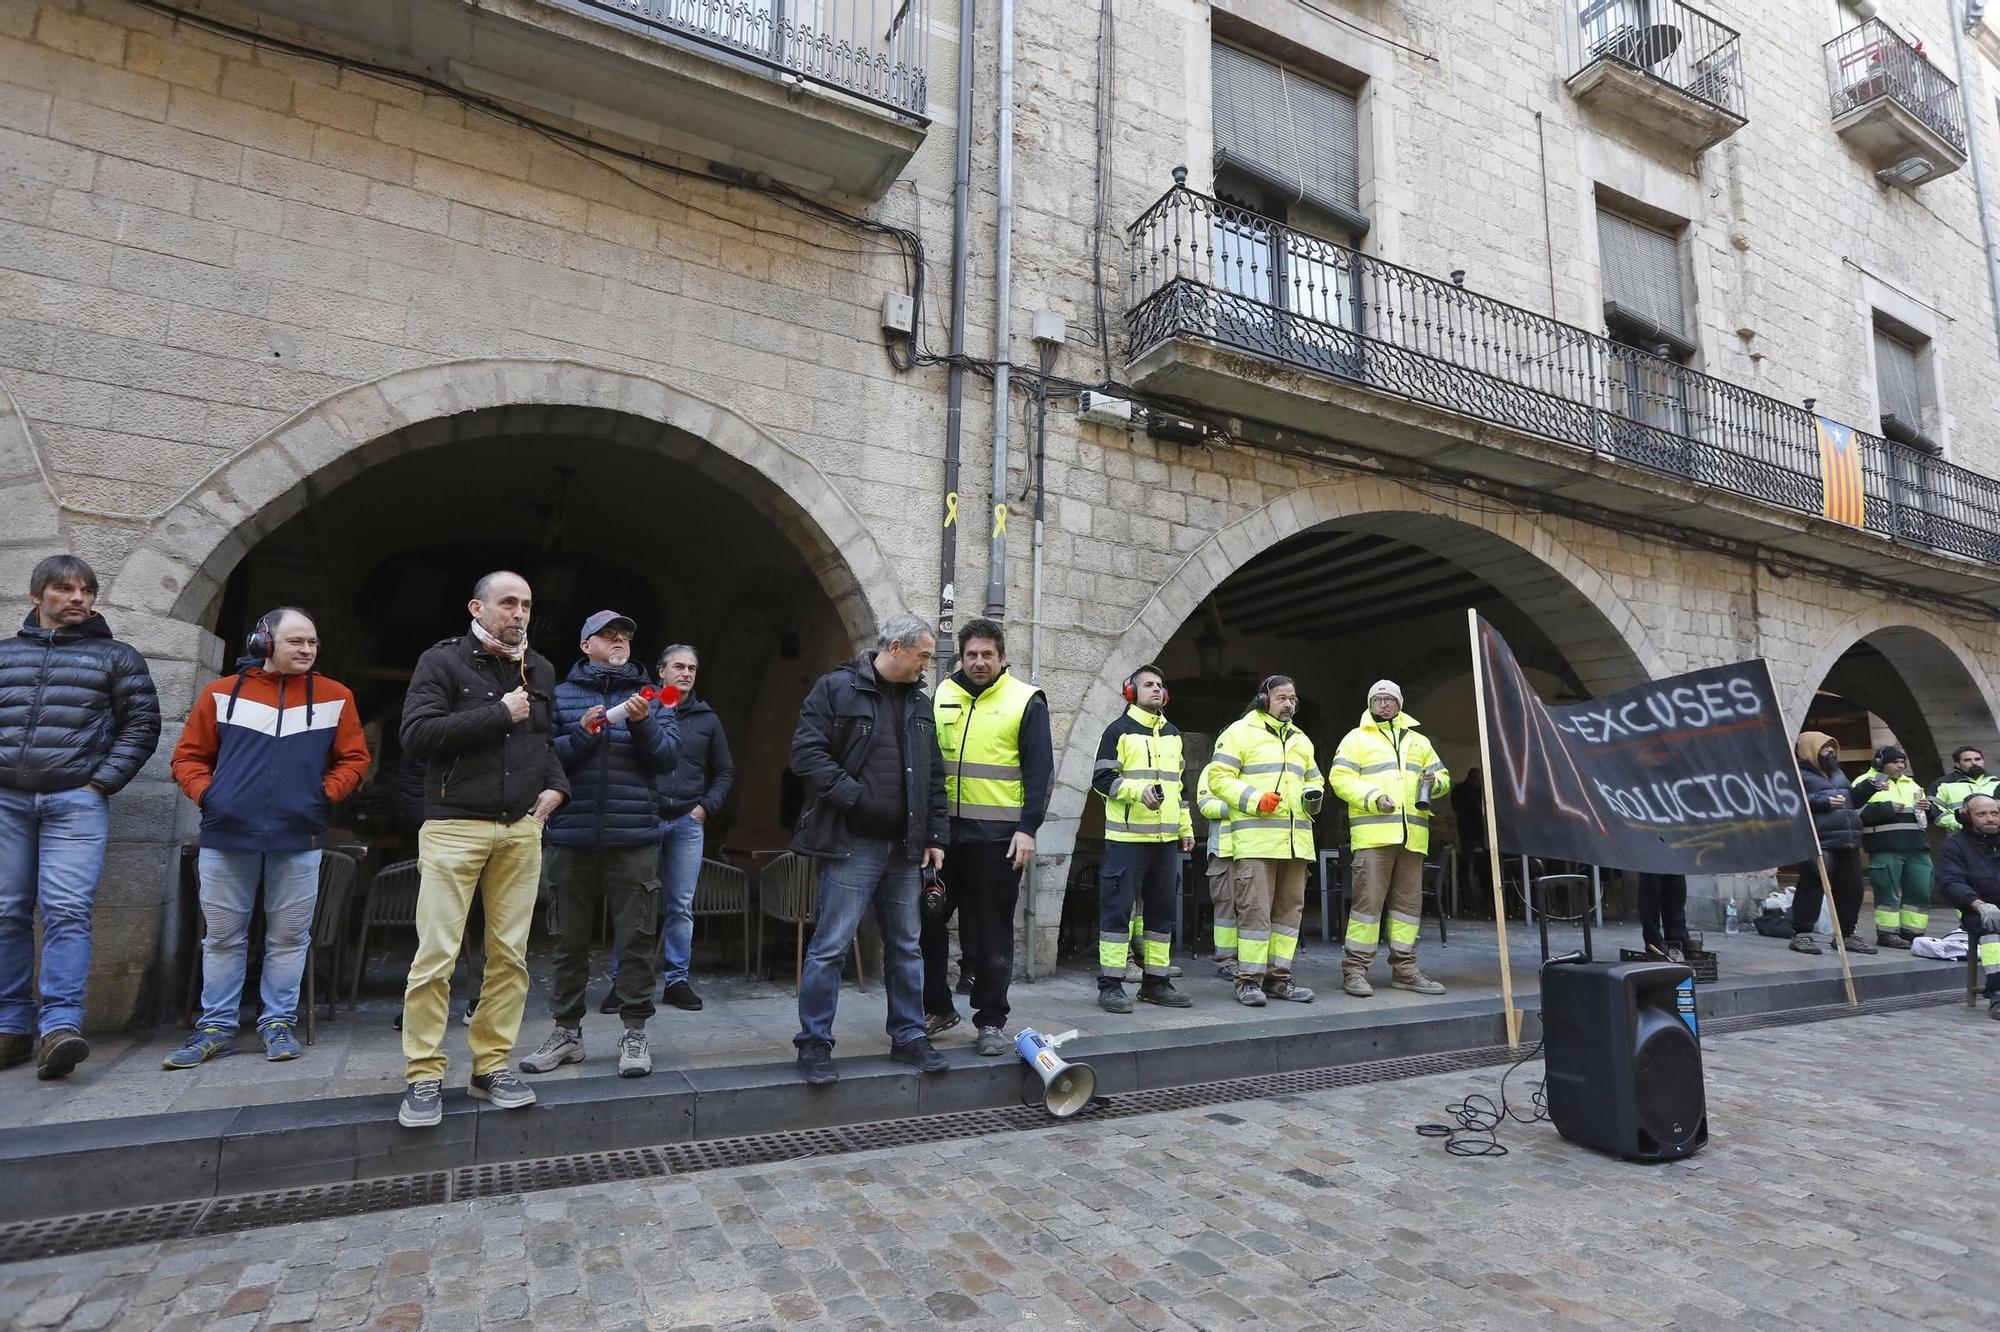 Treballadors municipals de Girona reprenen les mobilitzacions sorolloses a la plaça del Vi